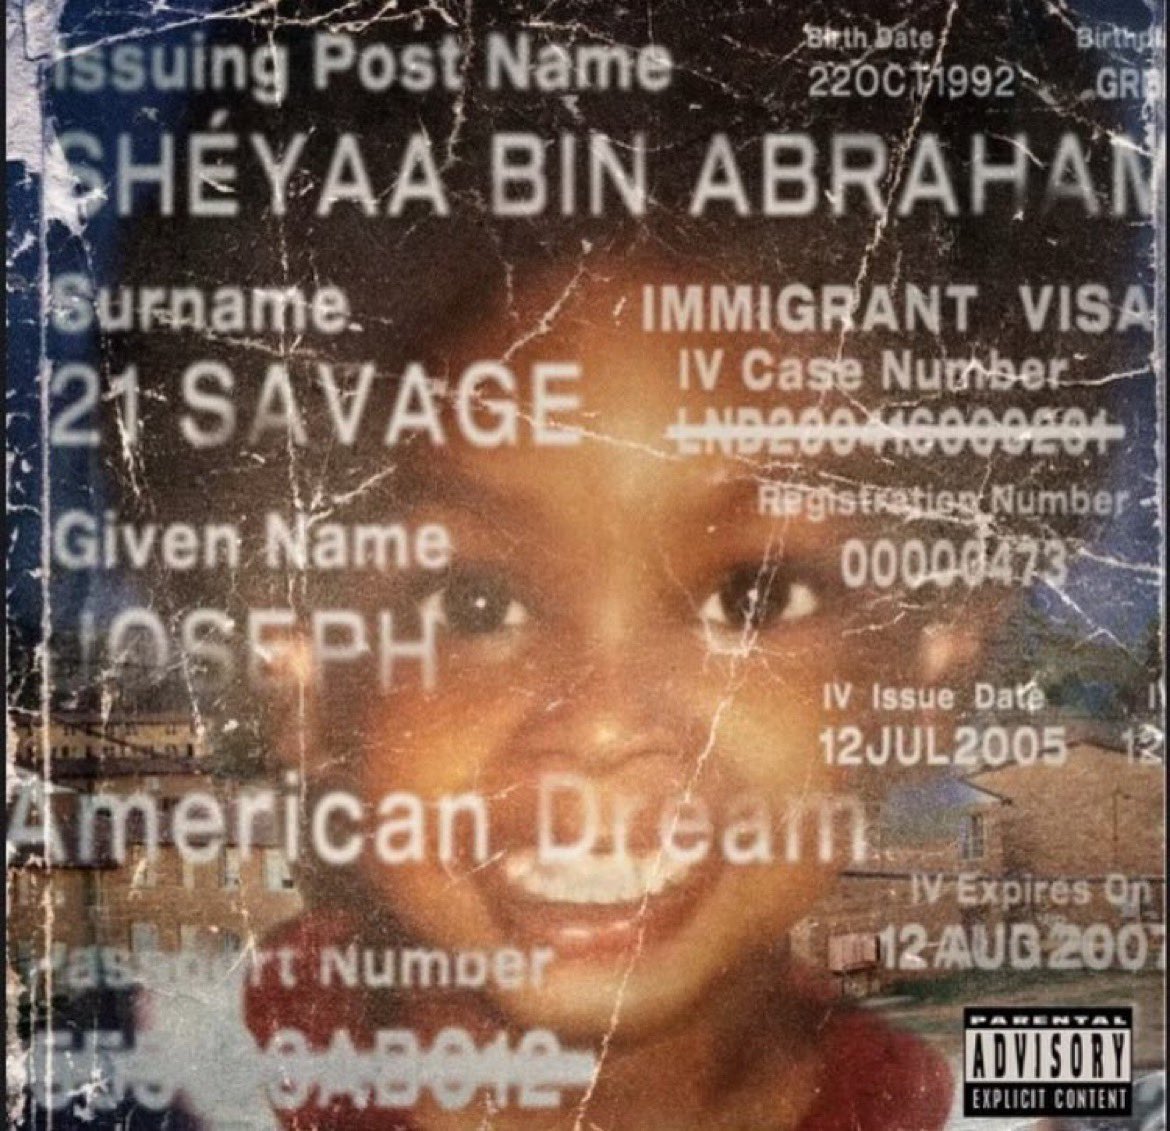 21 Savage annonce l'album "American Dream" - HYTRAPE